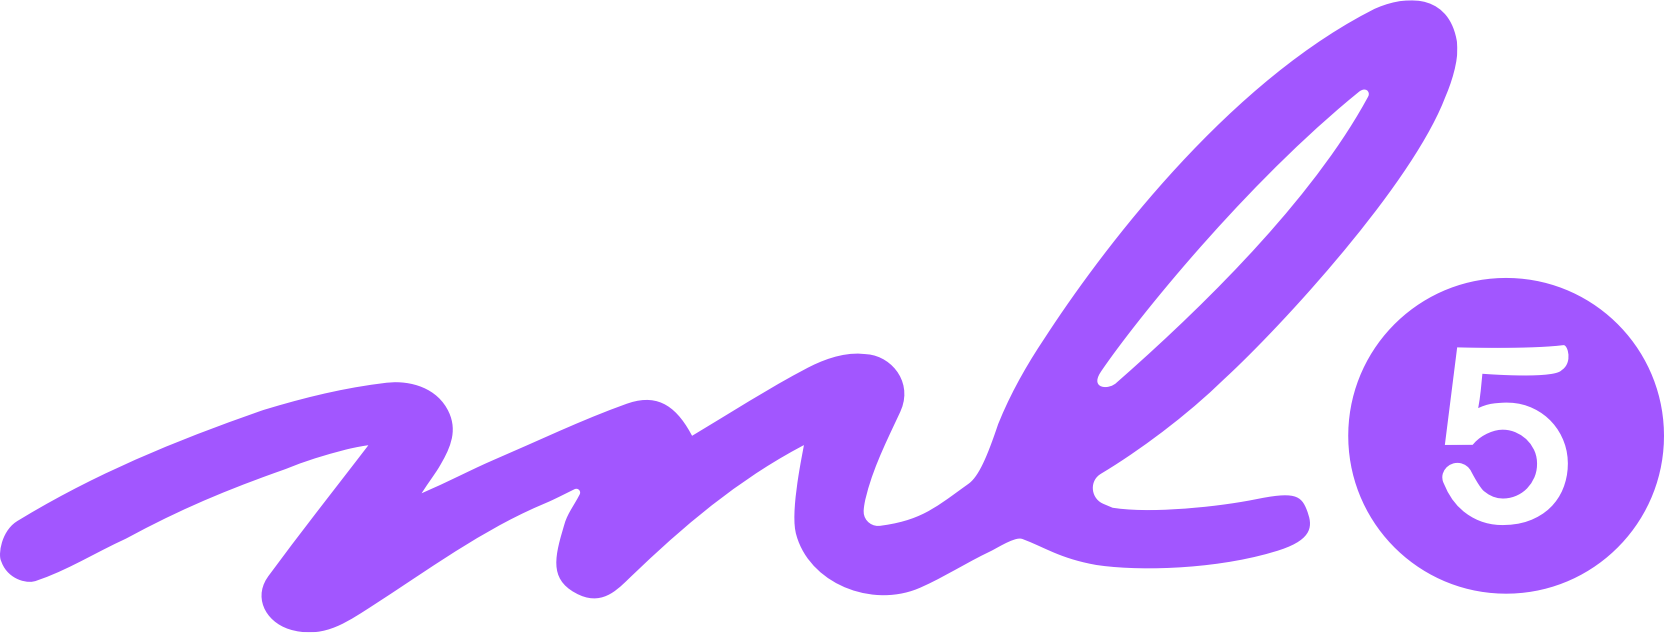 ml5.js logo